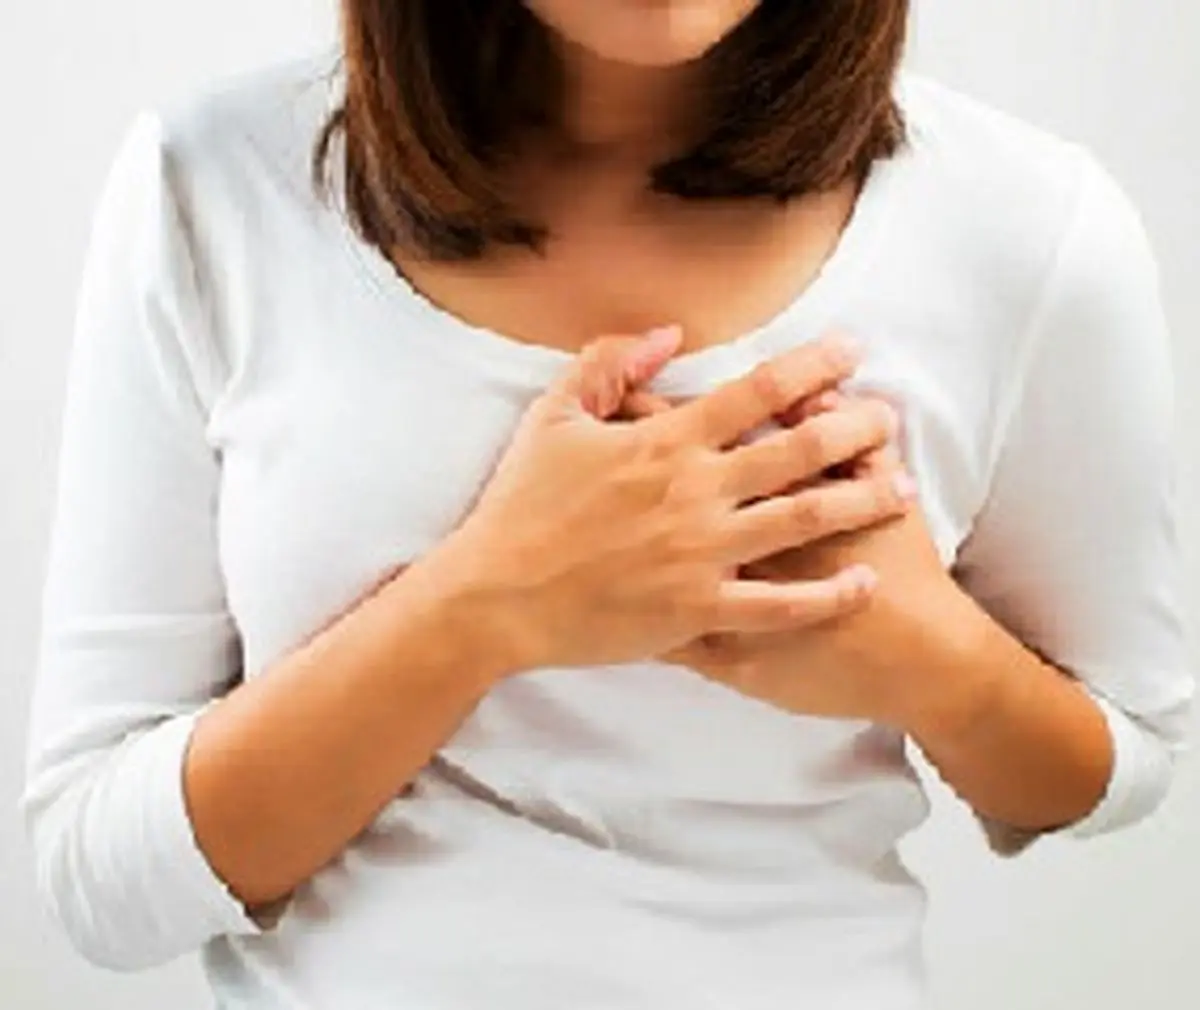 علت درد سینه در زنان | کدام درد سینه در زنان خطرناک است؟